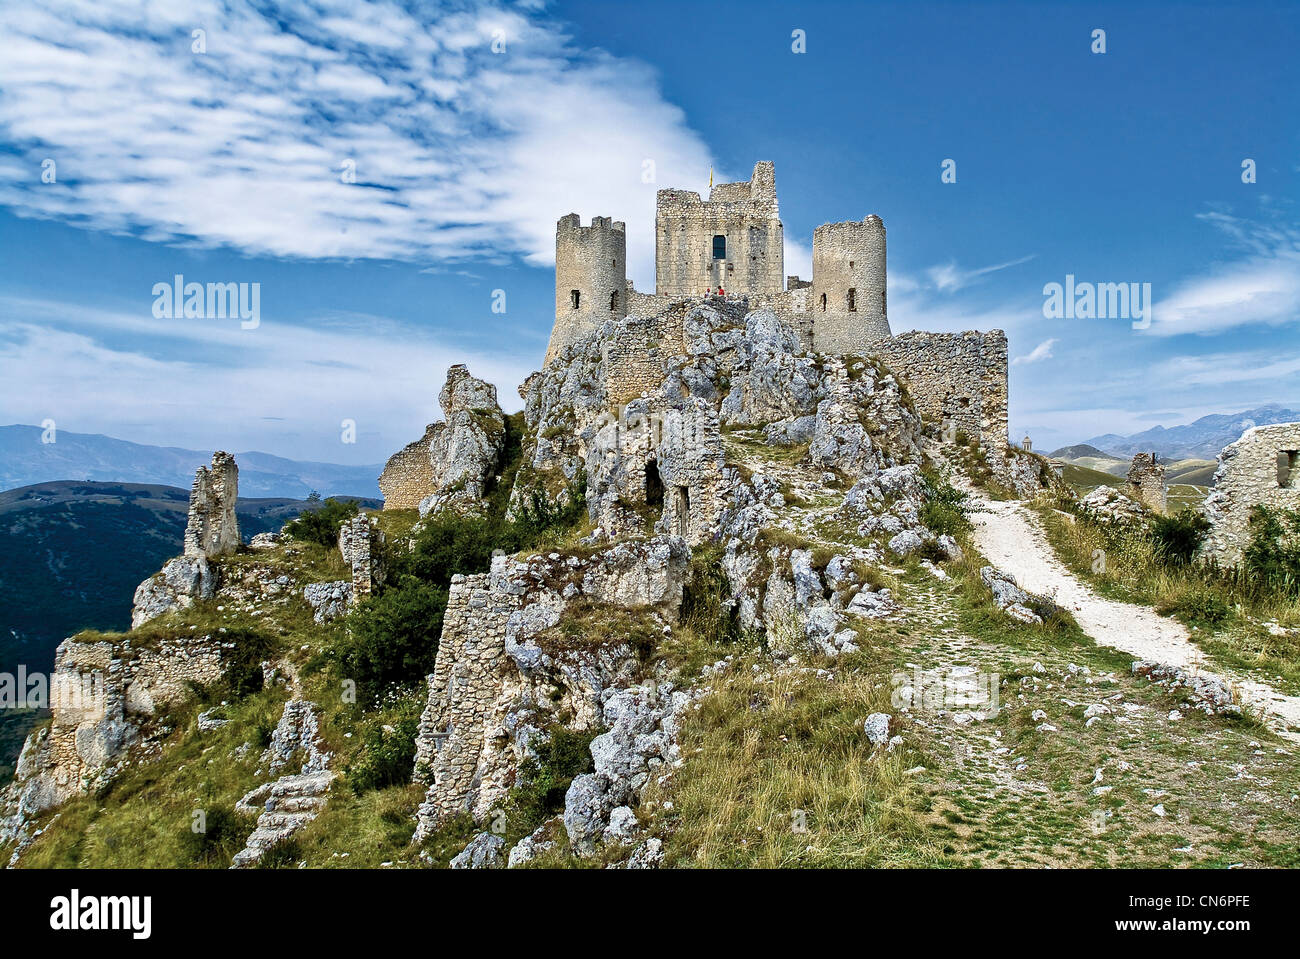 Europa Italia Abruzzo Gran Sasso e Monti della Laga Park Provincia di L'Aquila Rocca Calascio Fortezza Foto Stock